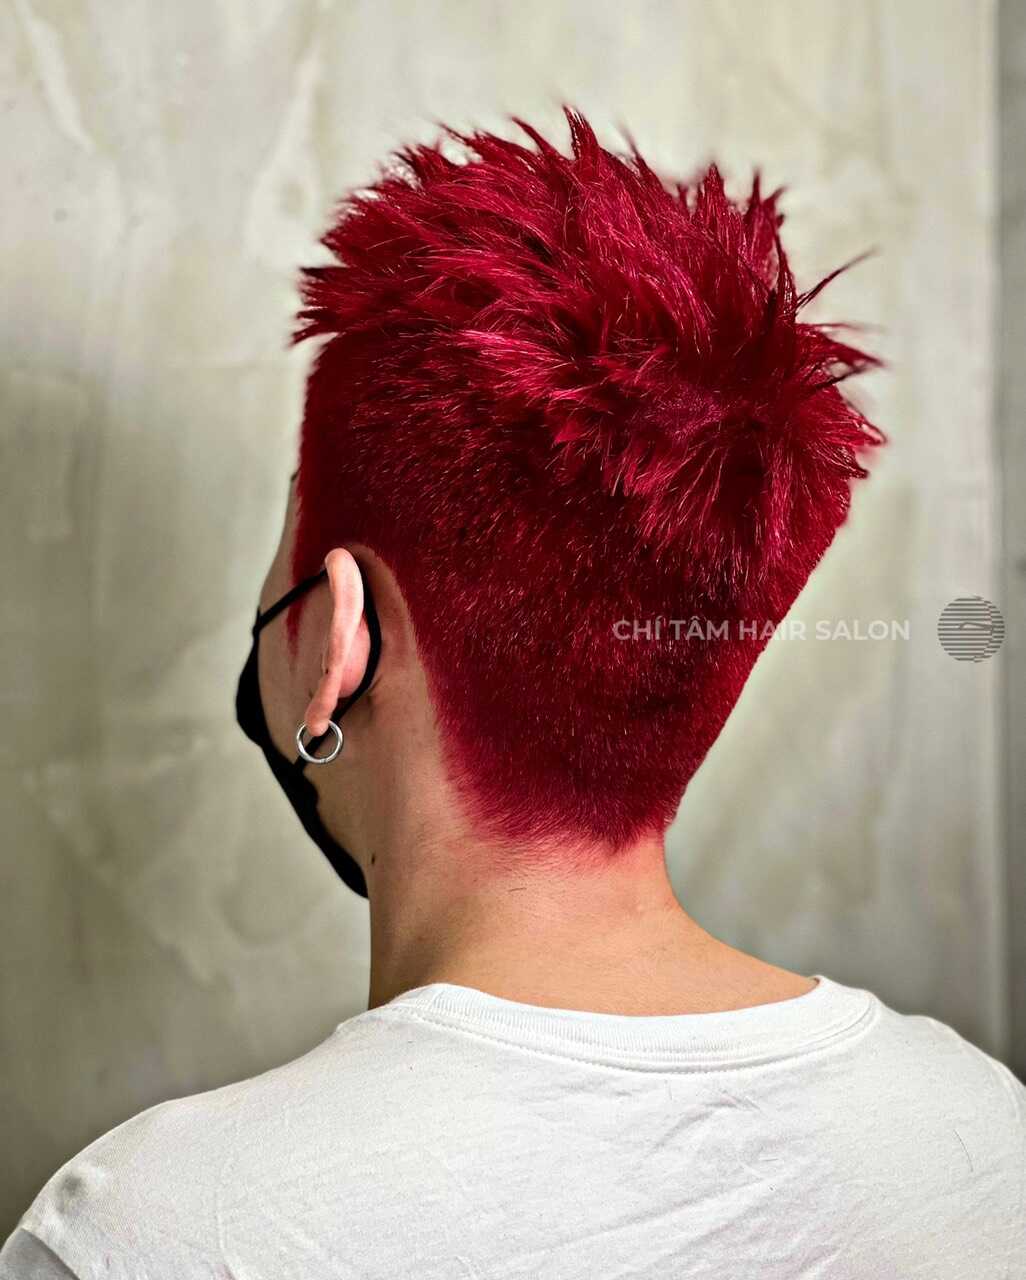 Xem ngay bức ảnh về tóc đỏ, điểm nhấn đầy sắc màu cho ngoại hình của bạn. Tóc đỏ im lặng nhưng lại toát lên sự nổi bật và cá tính, giúp bạn thể hiện được cá tính của mình.